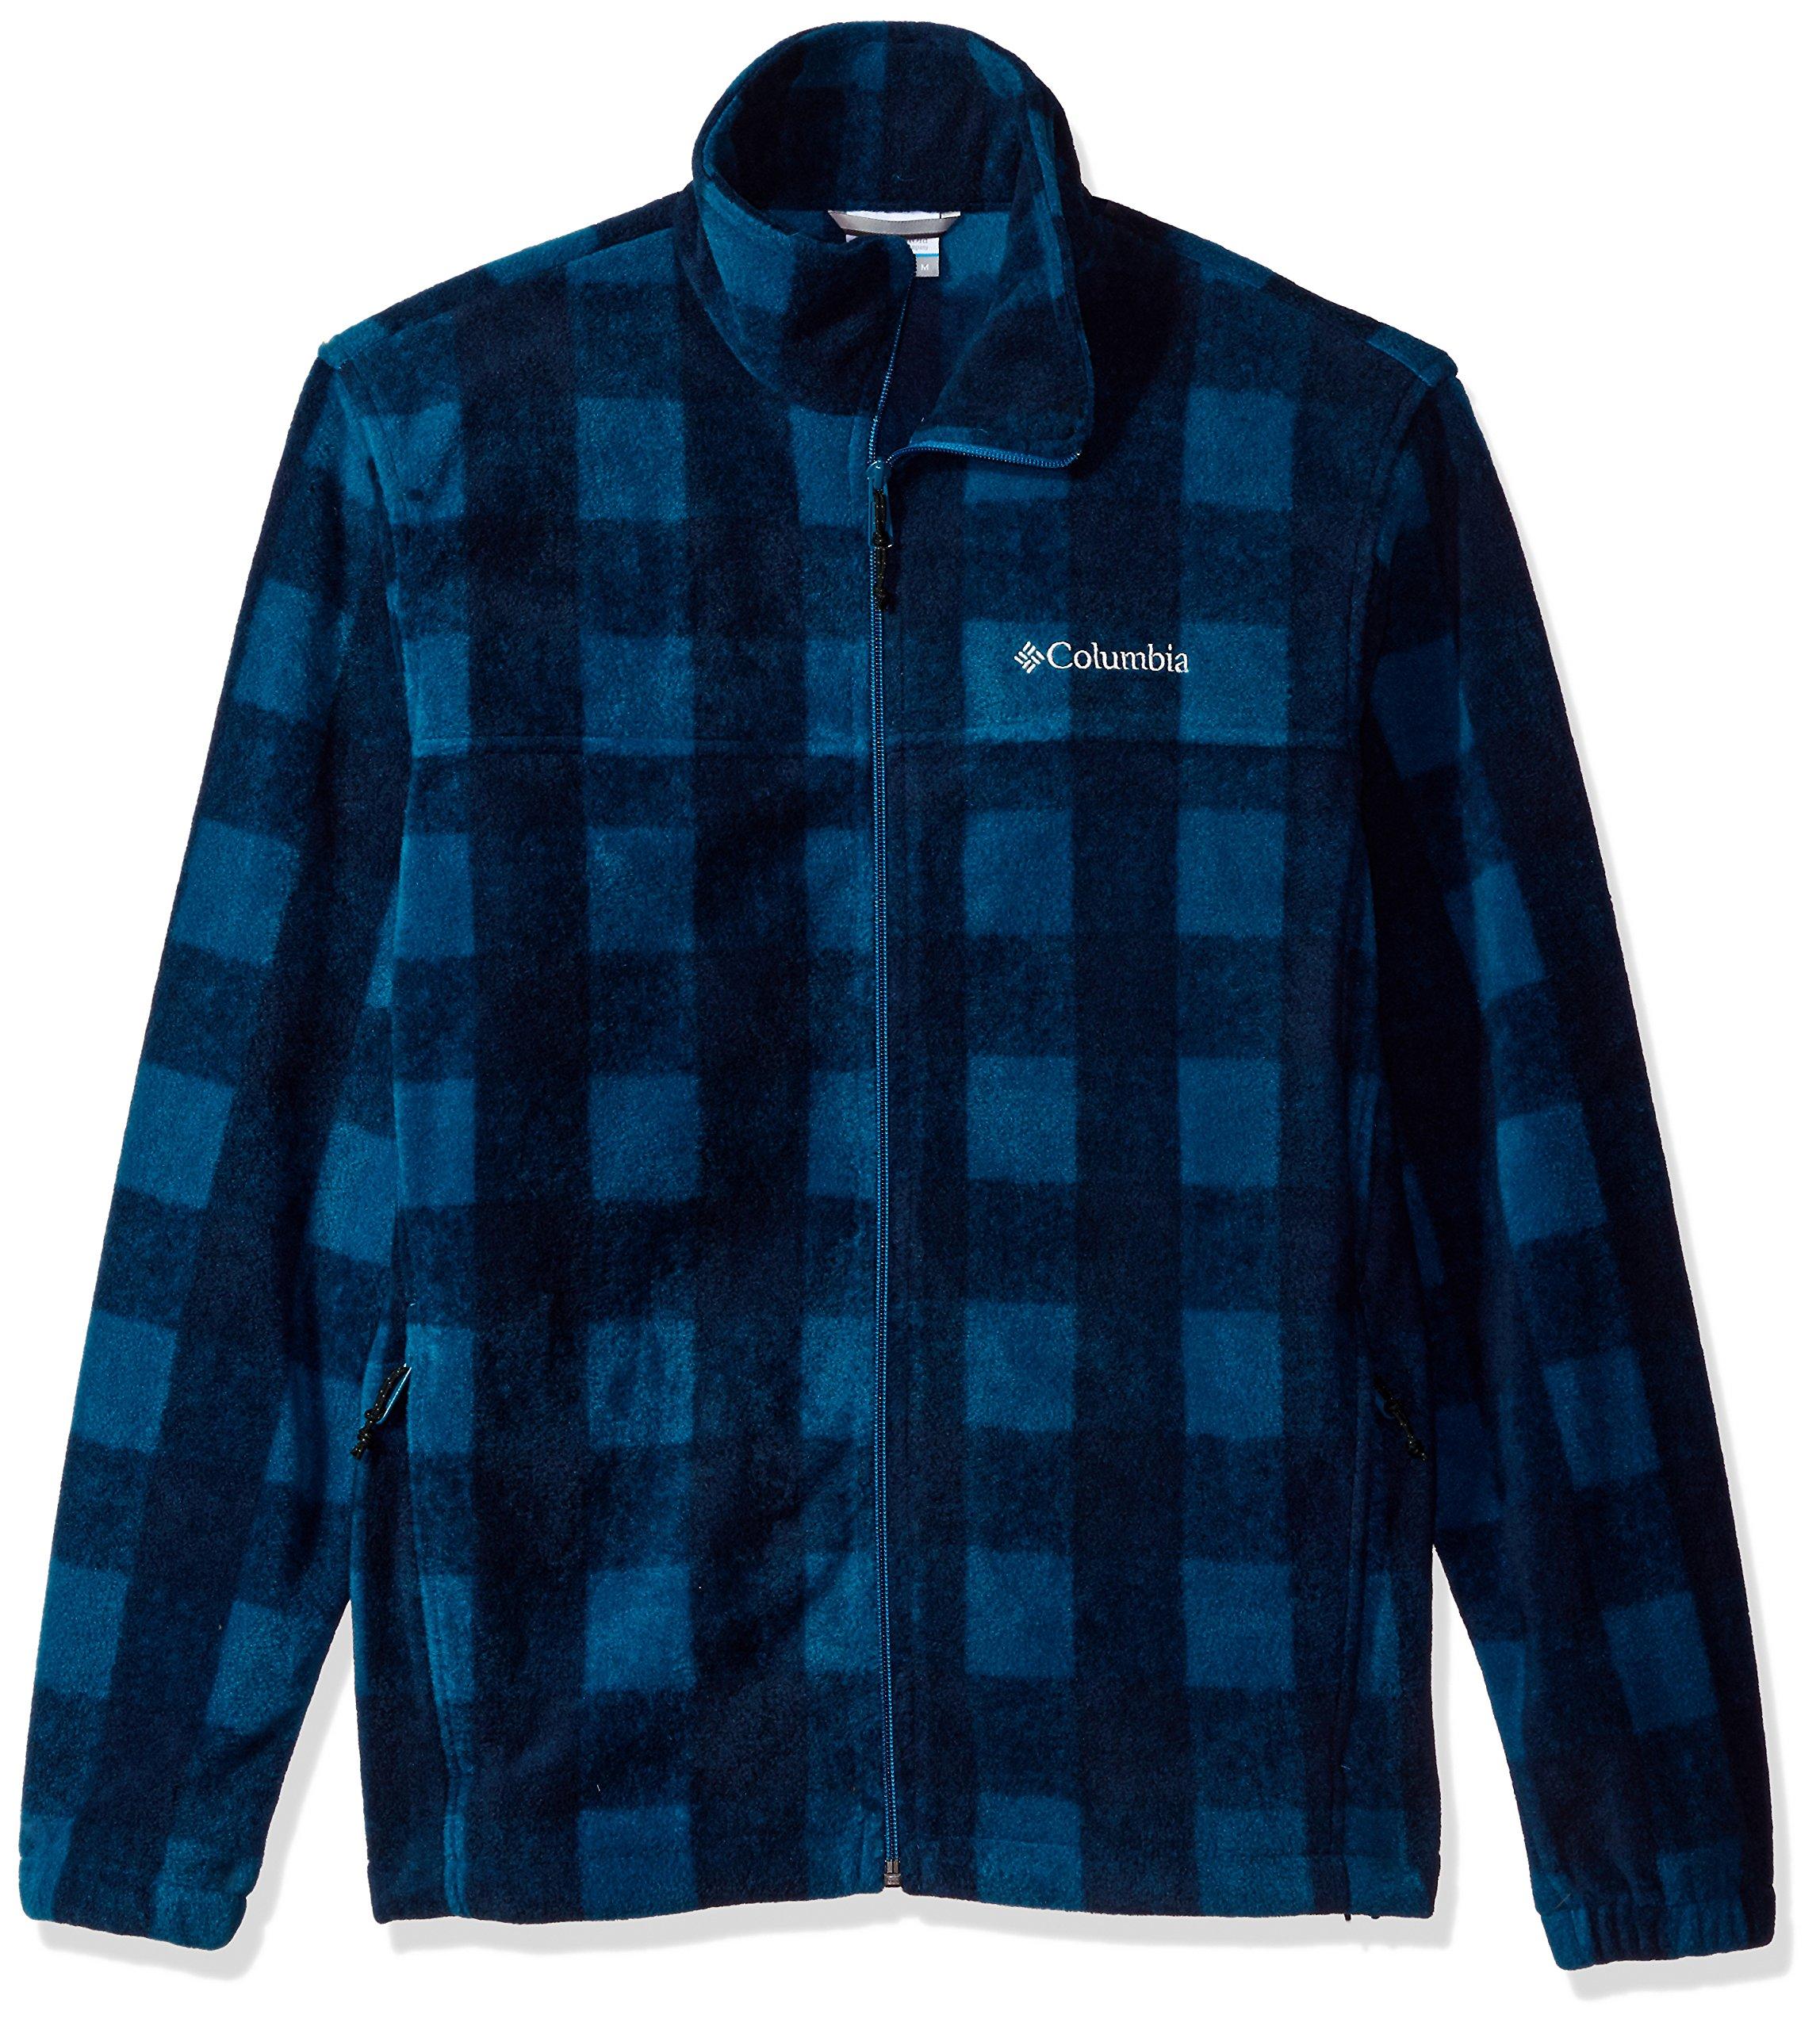 Columbia Cascades Explorer Full Zip Fleece Jacket in Blue for Men - Lyst